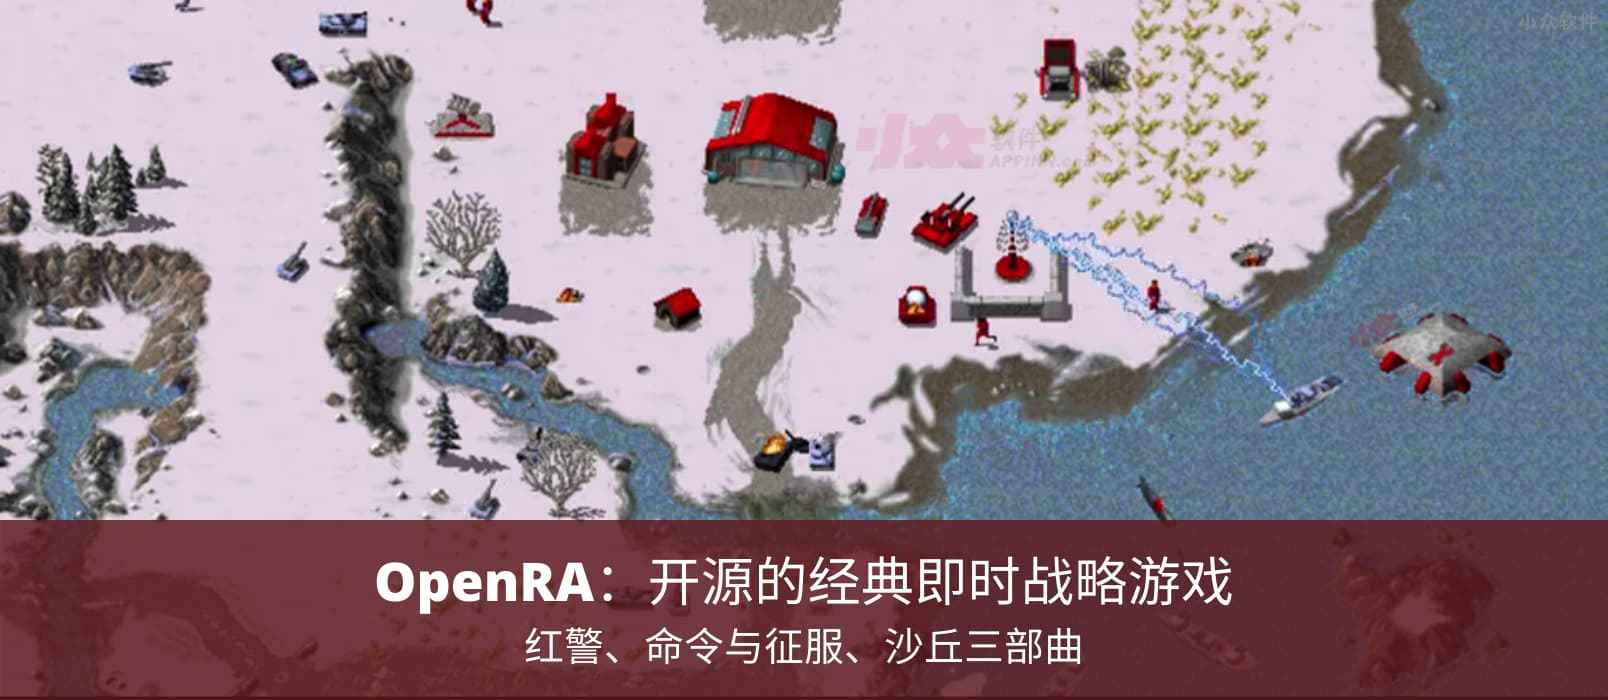 OpenRA - 红警、命令与征服、沙丘三部曲：开源的经典即时战略游戏